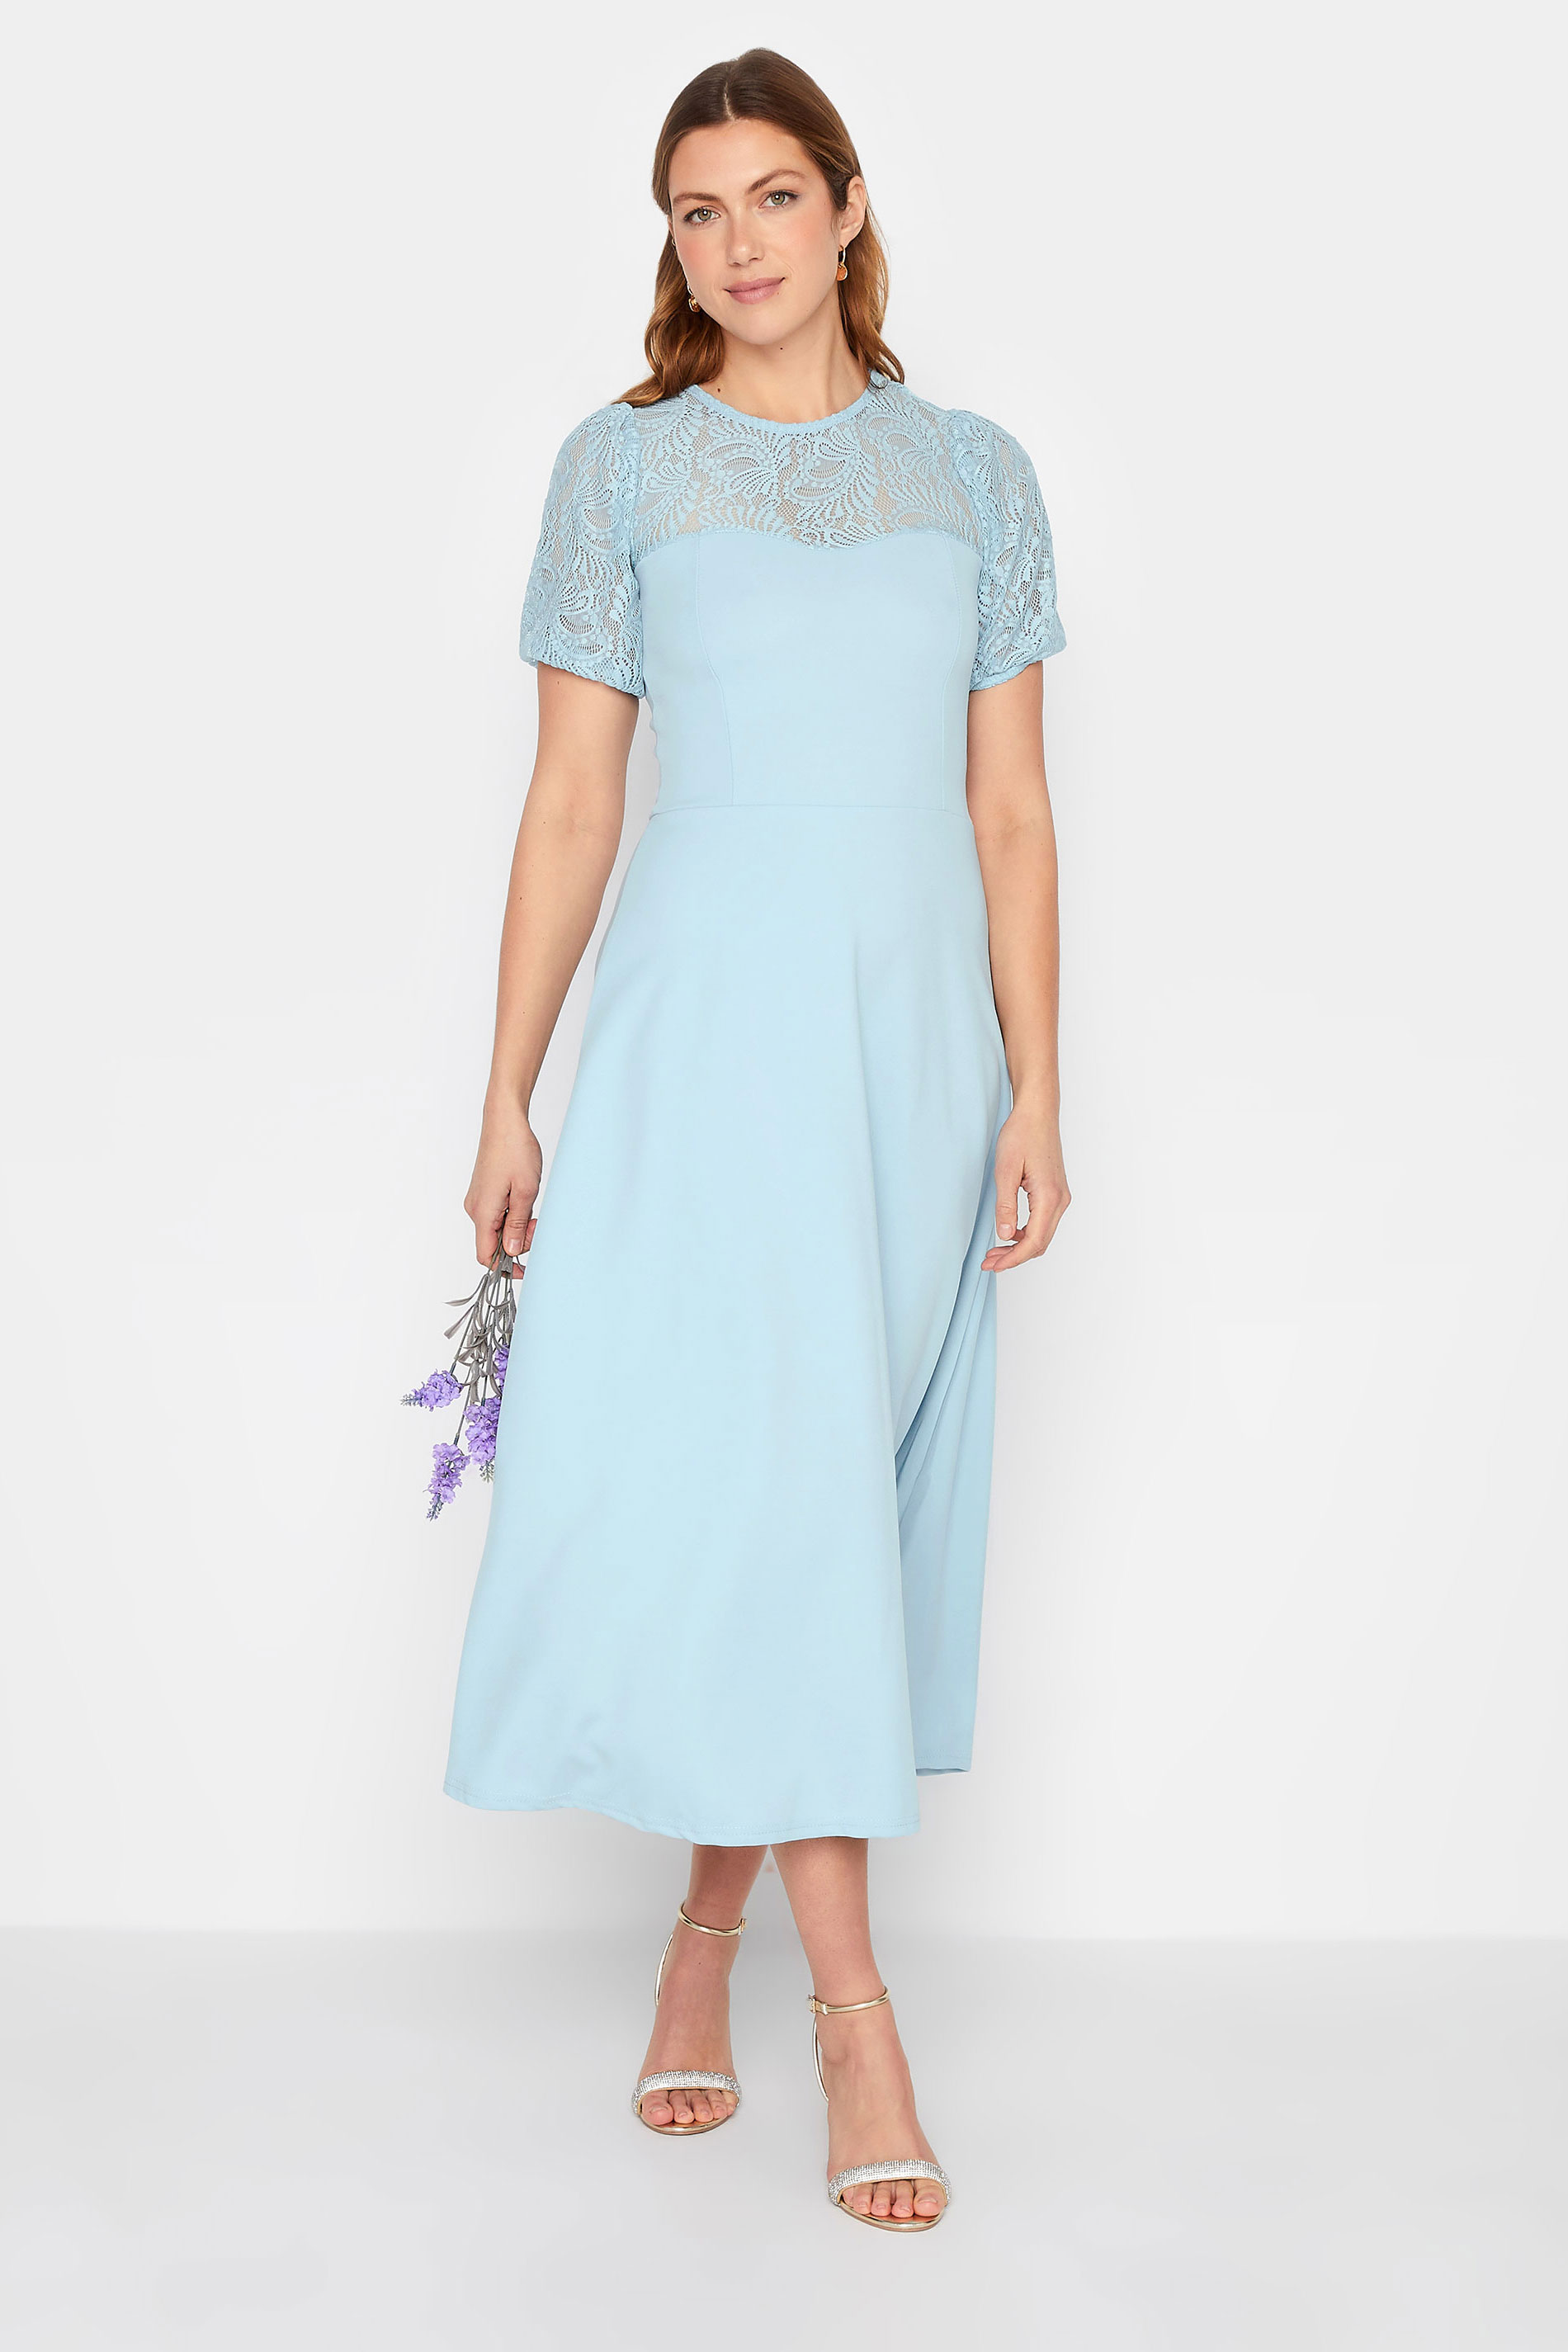 LTS Tall Women's Light Blue Lace Midi Dress | Long Tall Sally  1